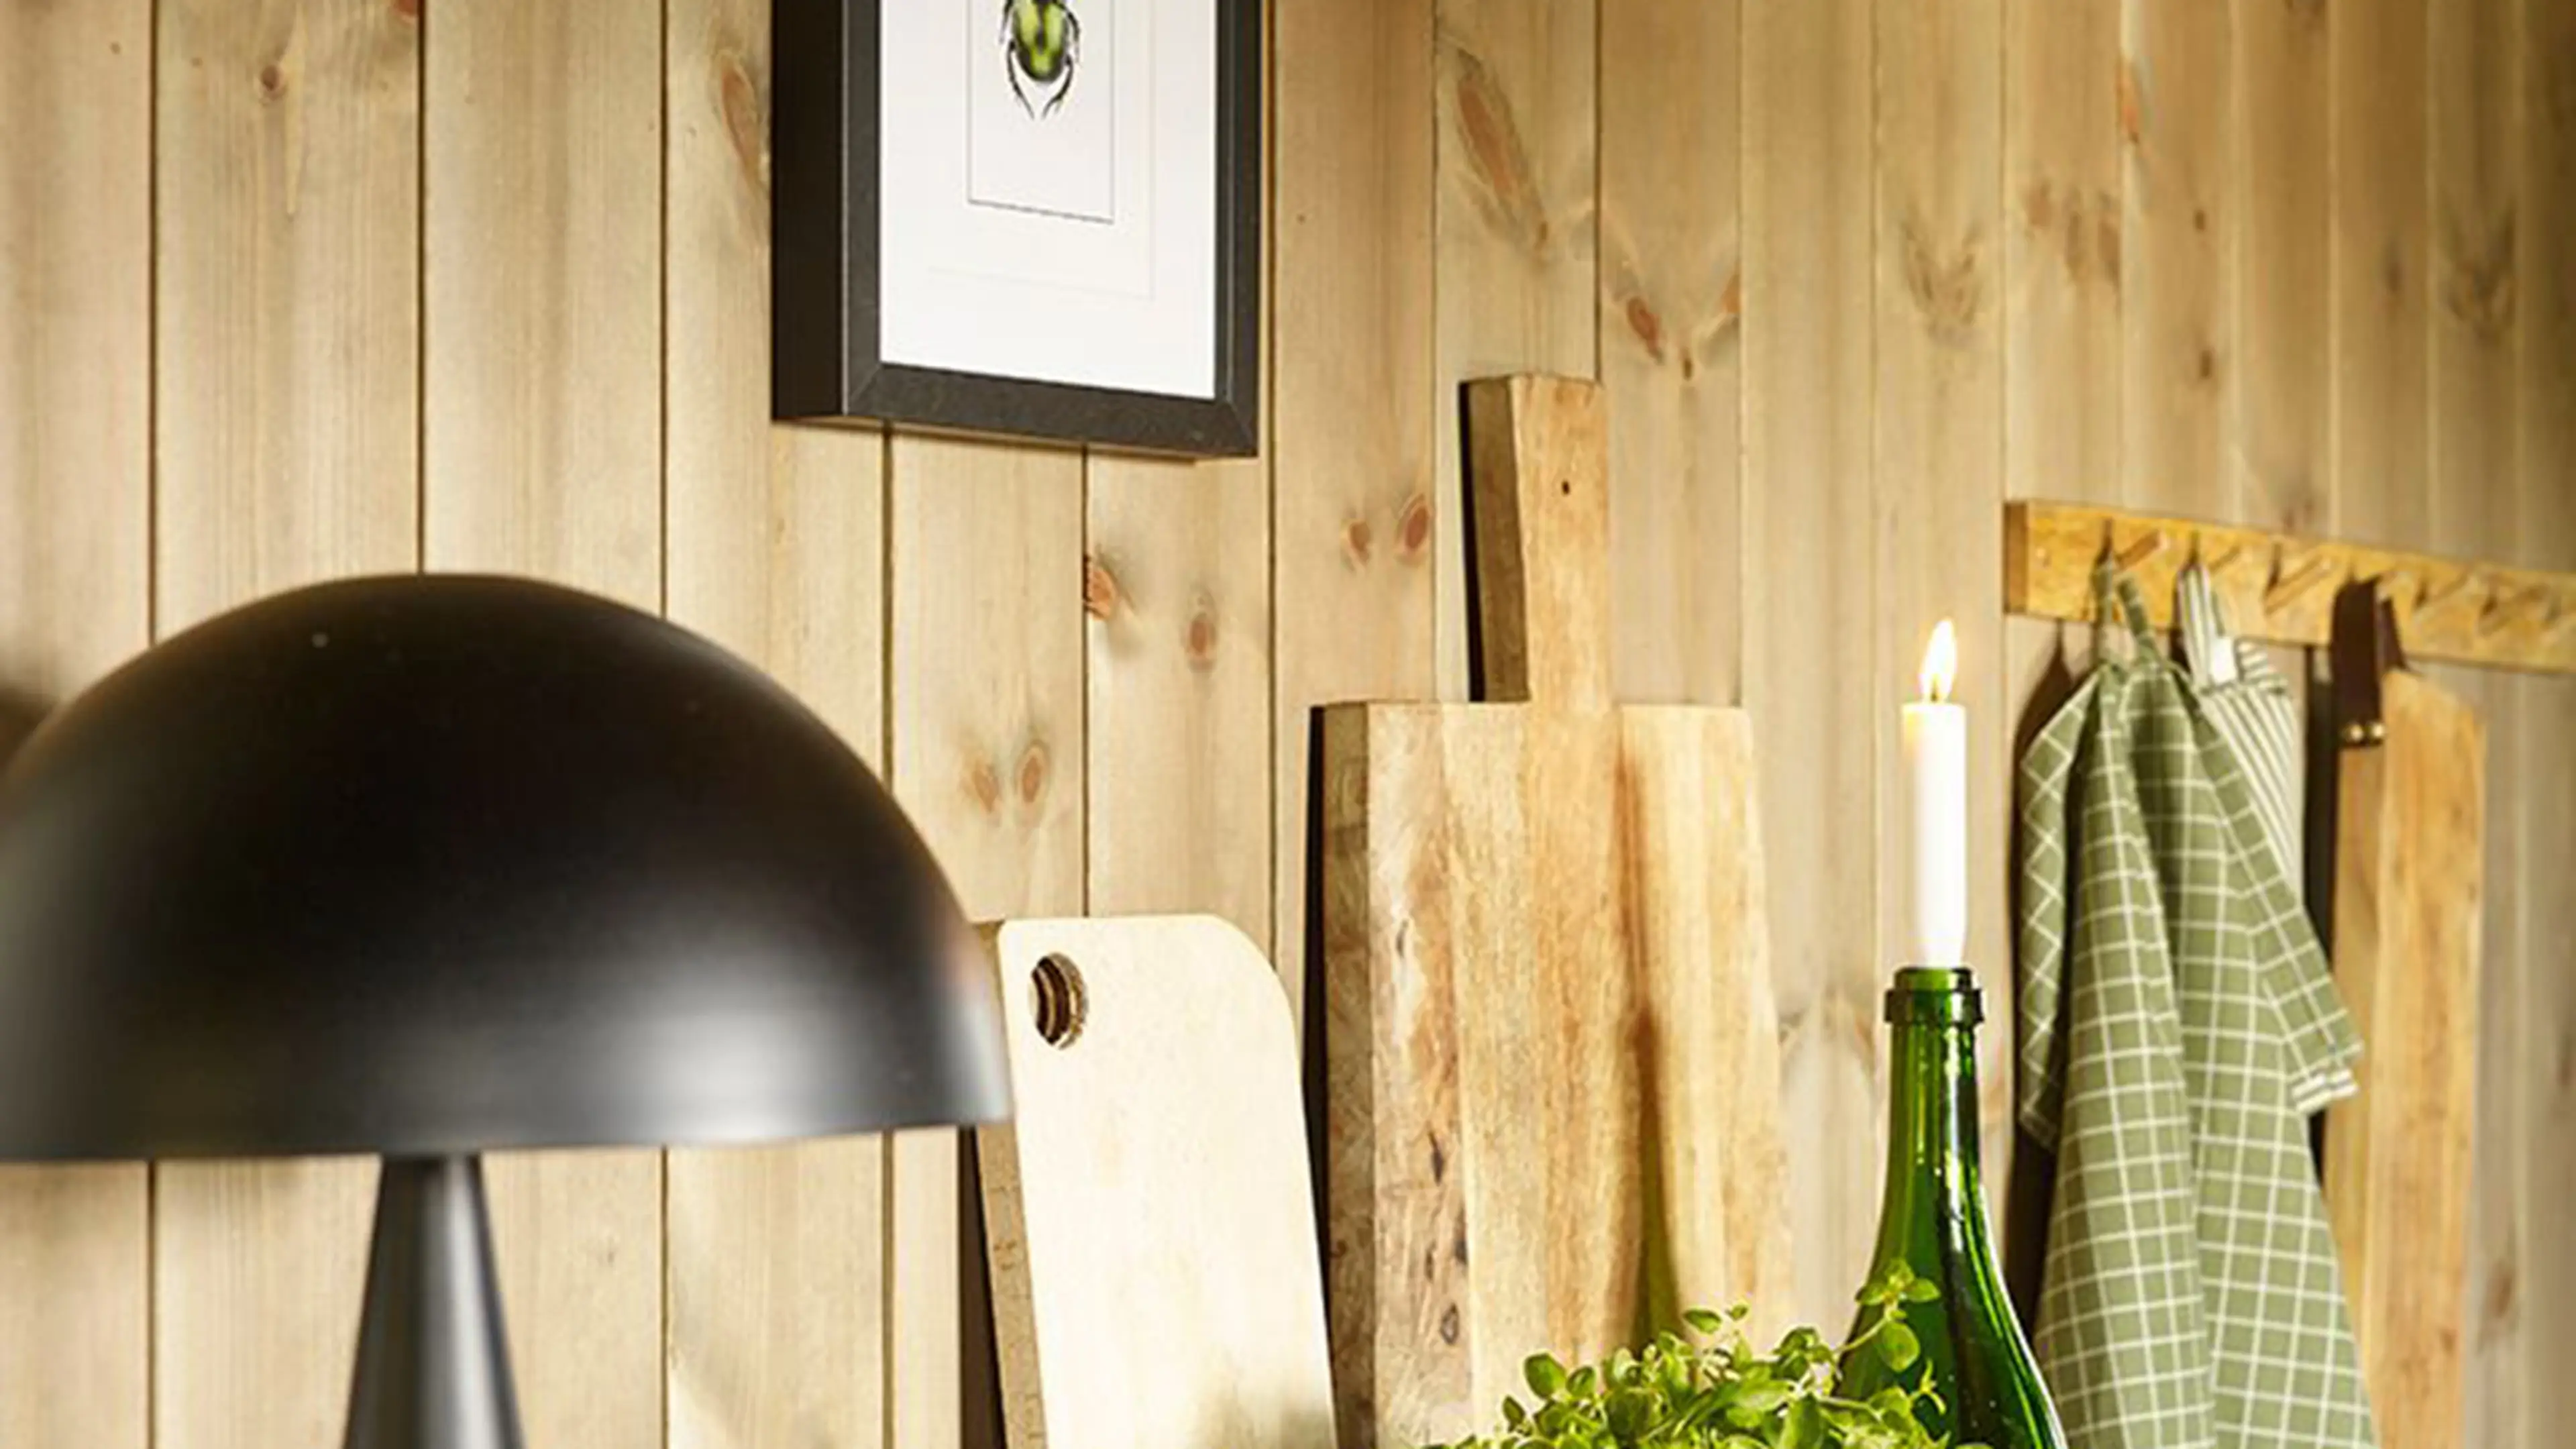 Nærbilde av kjøkkenhylle med lampe, urter og skjærefjøl på hytte. Beiset panel på veggen.